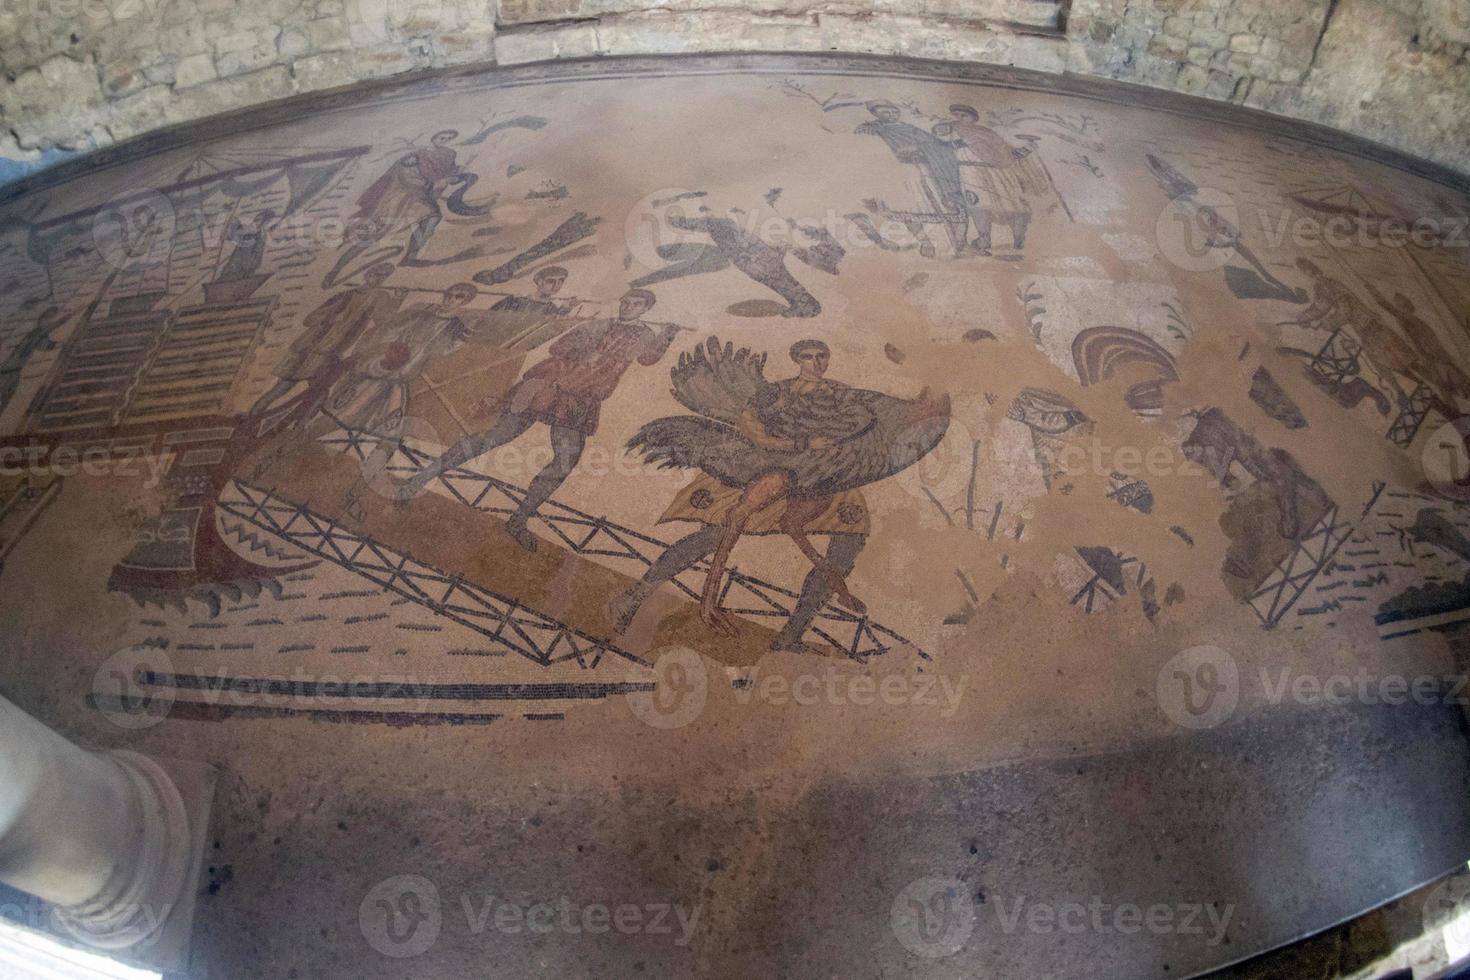 mosaico romano antigo de villa del casale, sicília foto